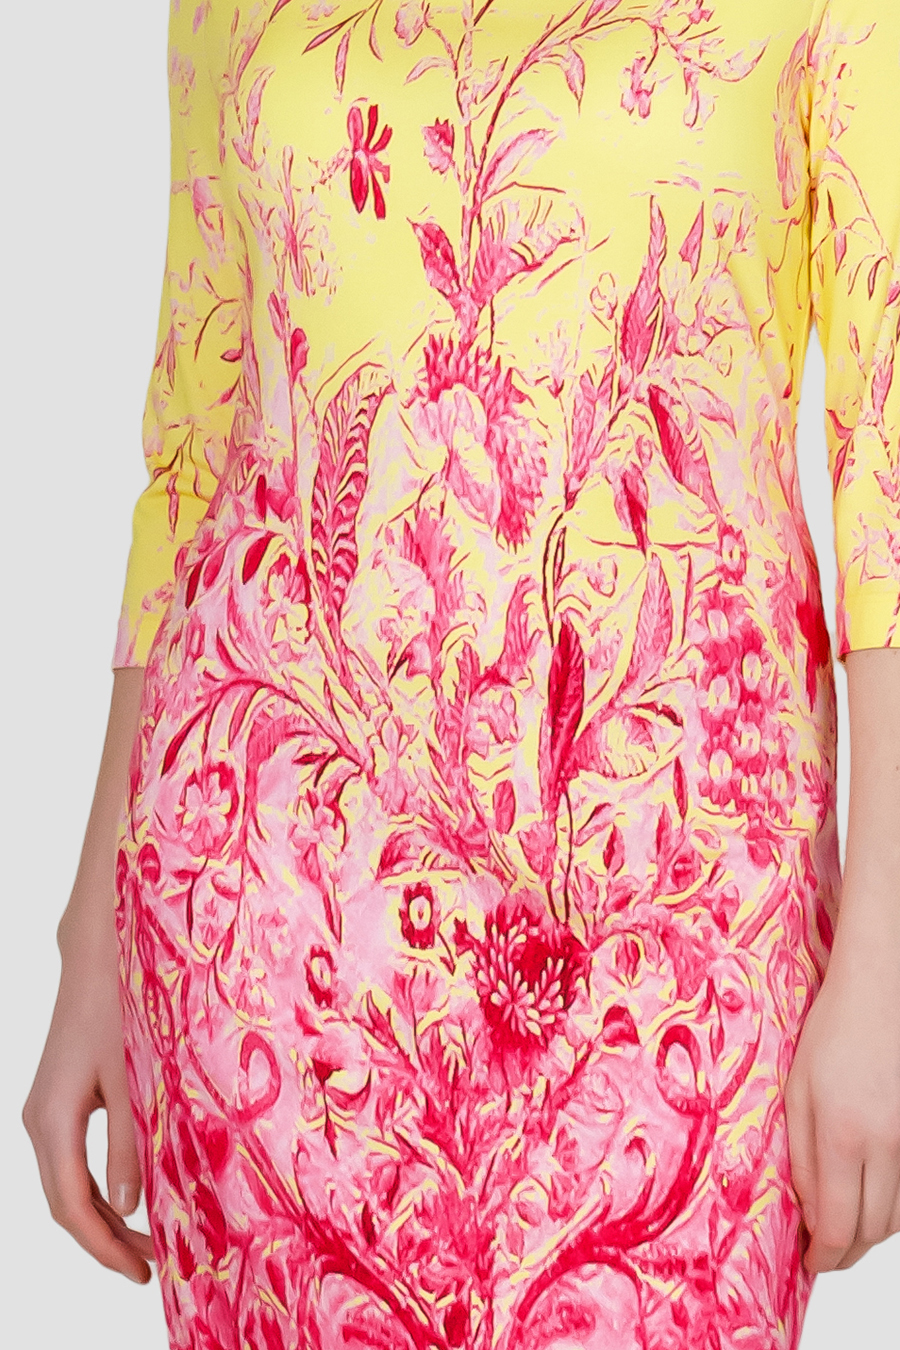 Queen Elisabeth Kleid Elegant Floraldruck mit Farbverlauf Pink Gelb Detail